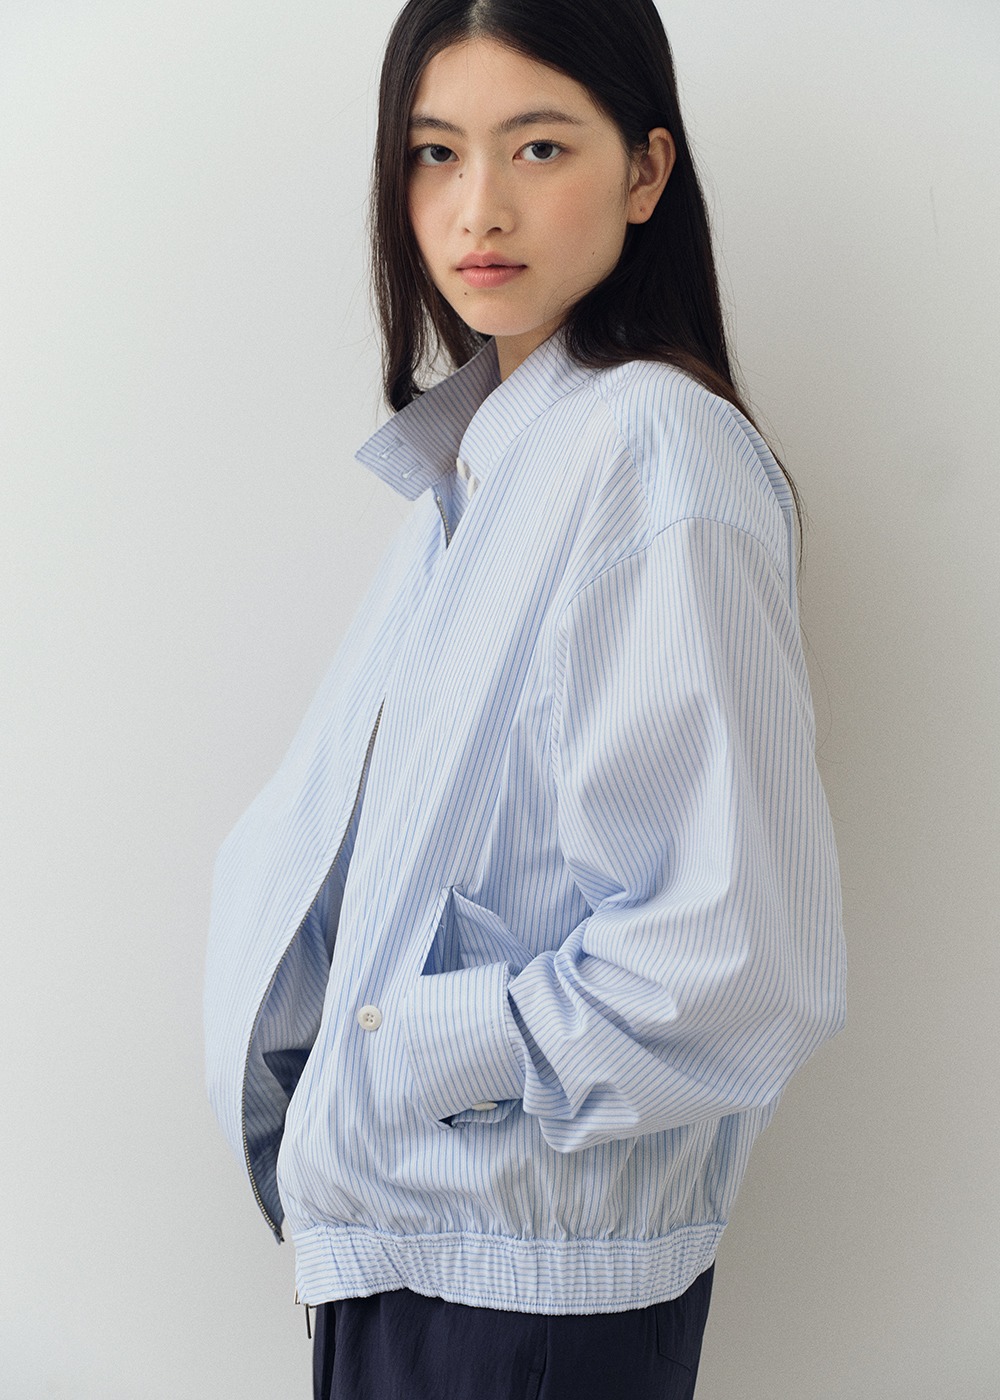 Summer Blouson Jacket - Stripe blue (Fabric by Japan)